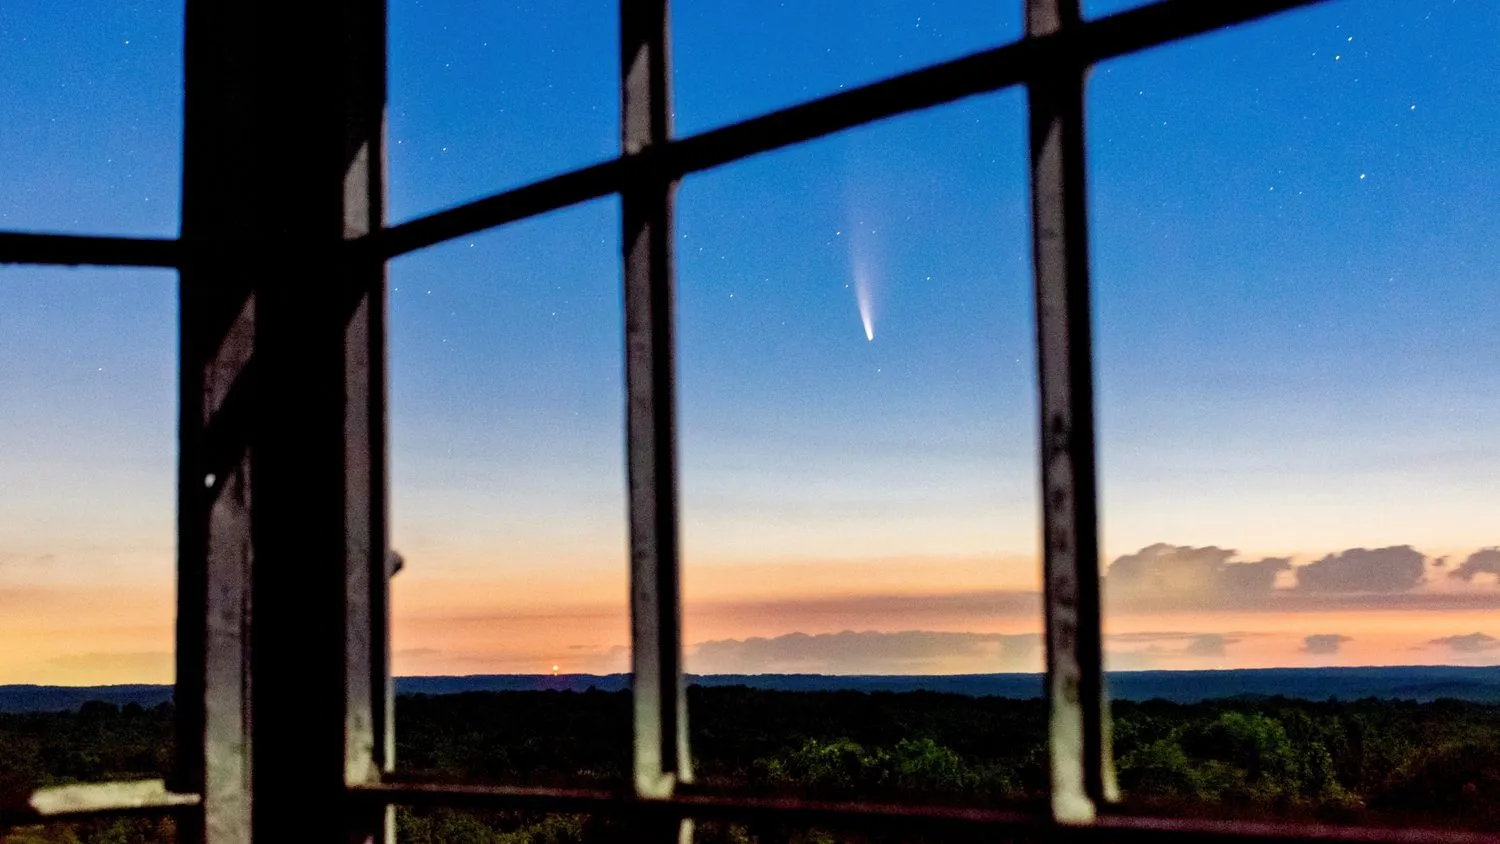 ein Komet streift den Himmel über einem dunklen Wald, gesehen durch leere Fenster hoch oben